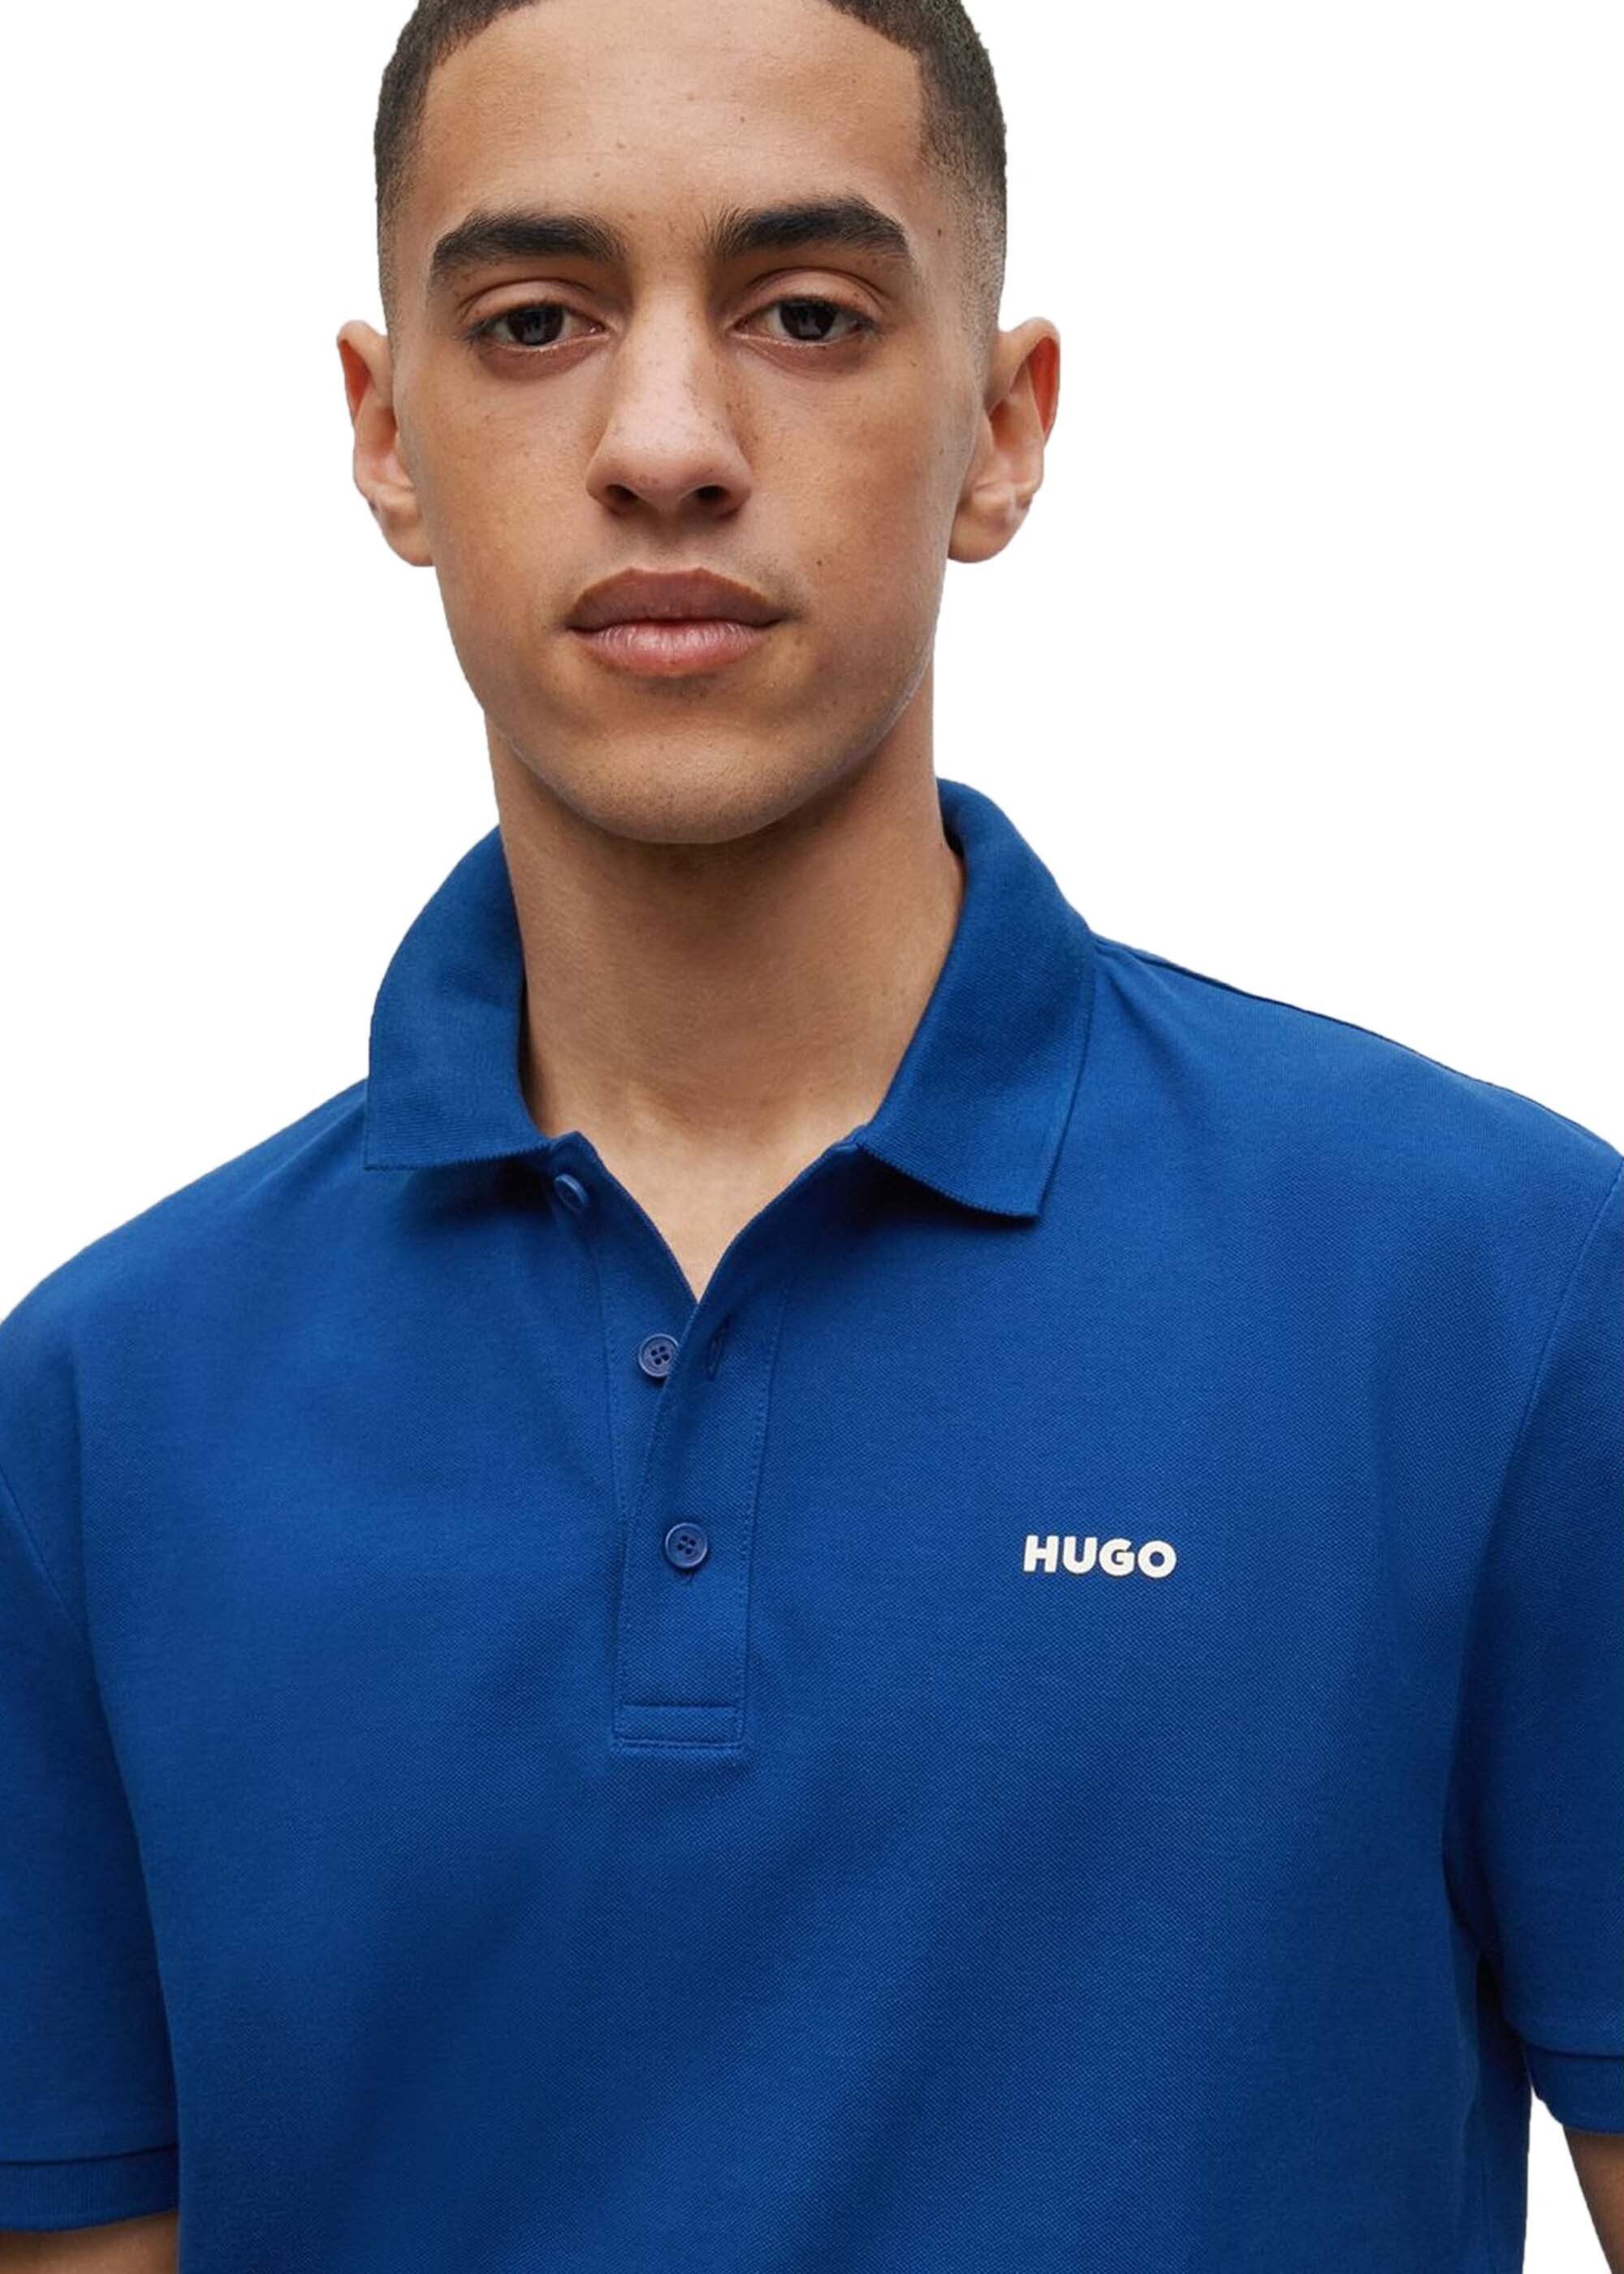 Polo-Shirt Poloshirt (Navy) - Blau 1/2-Arm HUGO Herren DONOS222, Pique,